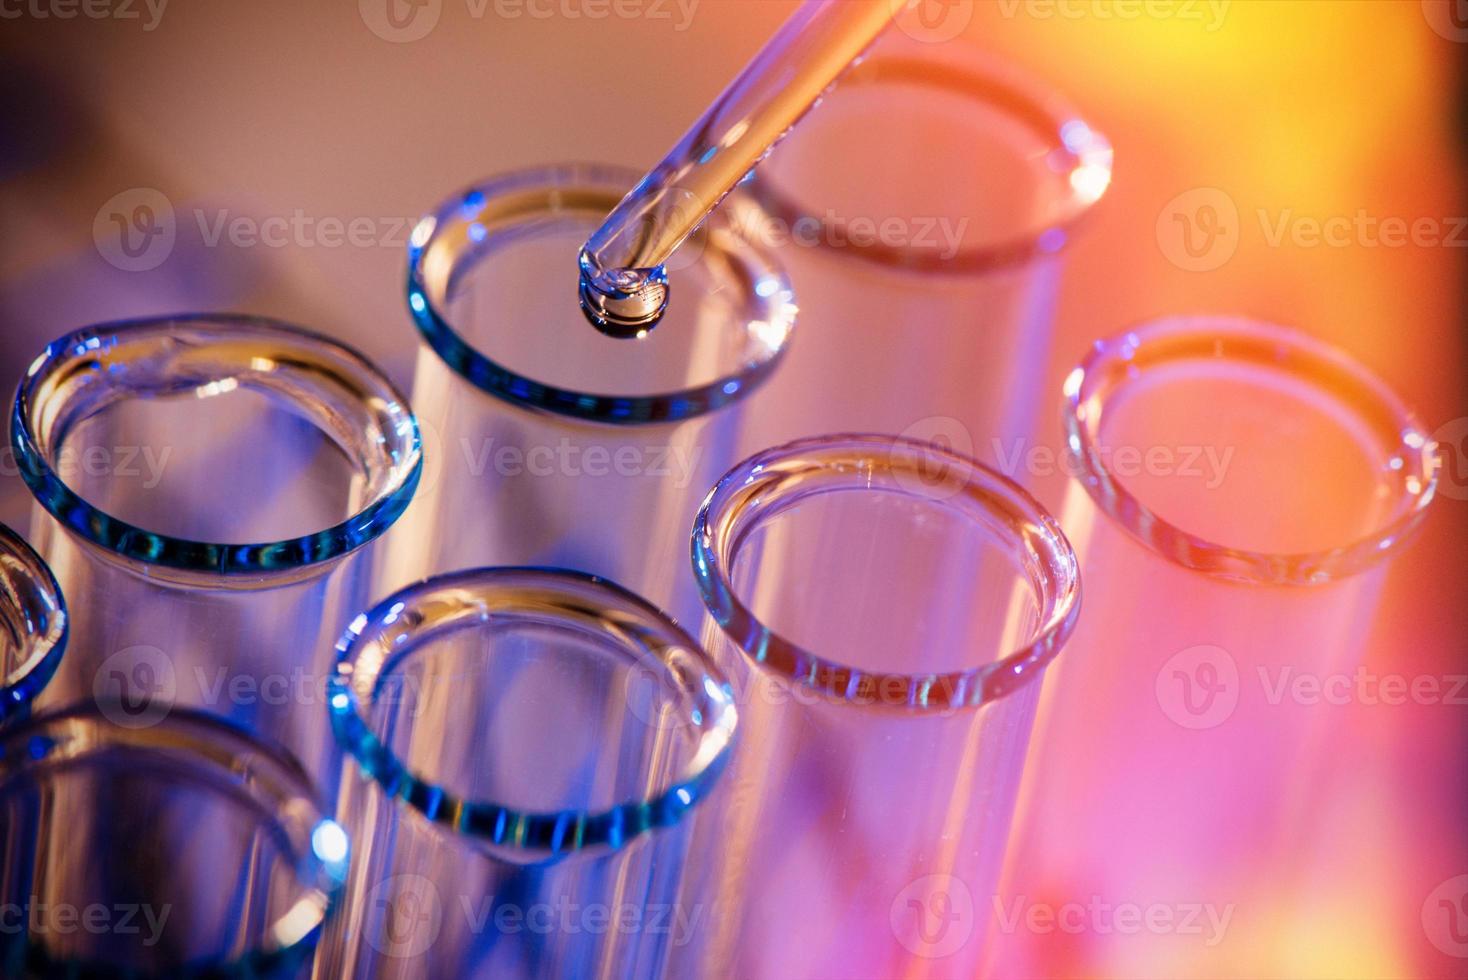 rangée de tubes à essai. concept de laboratoire médical ou scientifique, gouttelette liquide avec compte-gouttes sur fond bleu rouge, gros plan, photo macro.